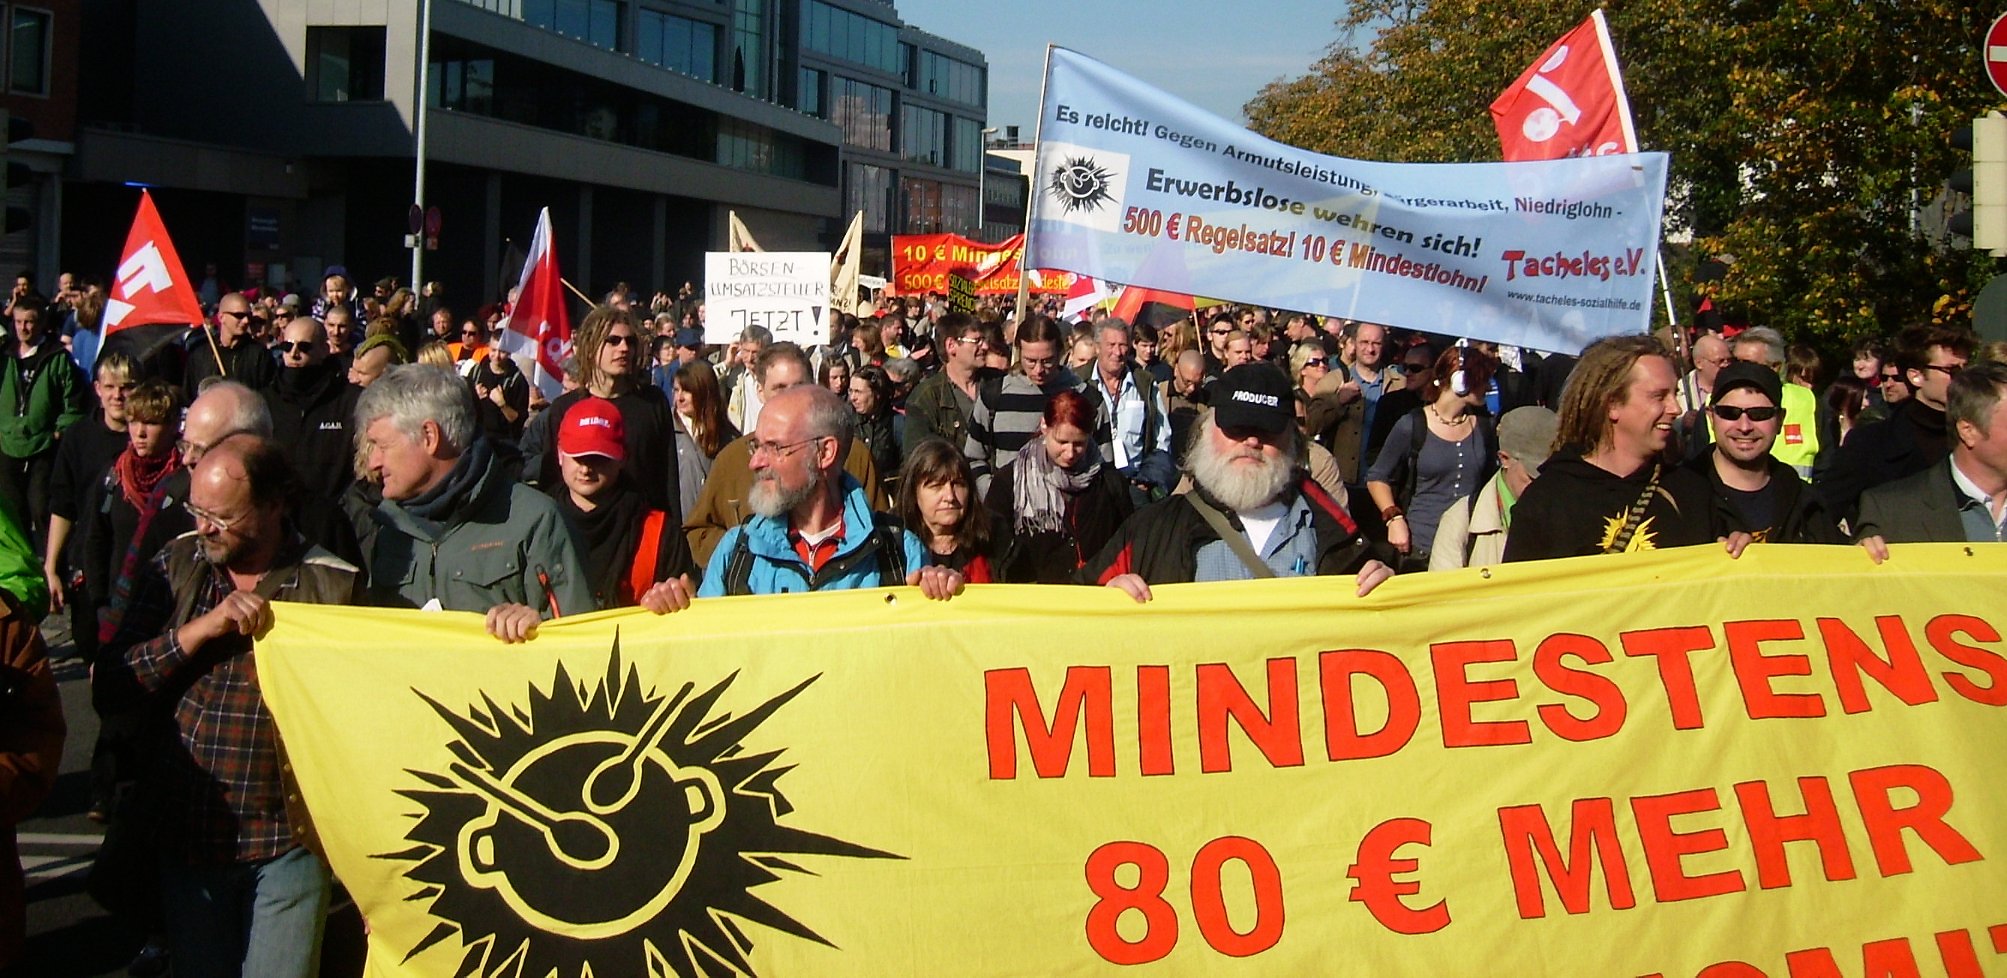 Bundesweite Erwerbslosendemonstration in Oldenburg am 10. Oktober 2010 (Quelle: Erwerbslosen Forum Deutschland)